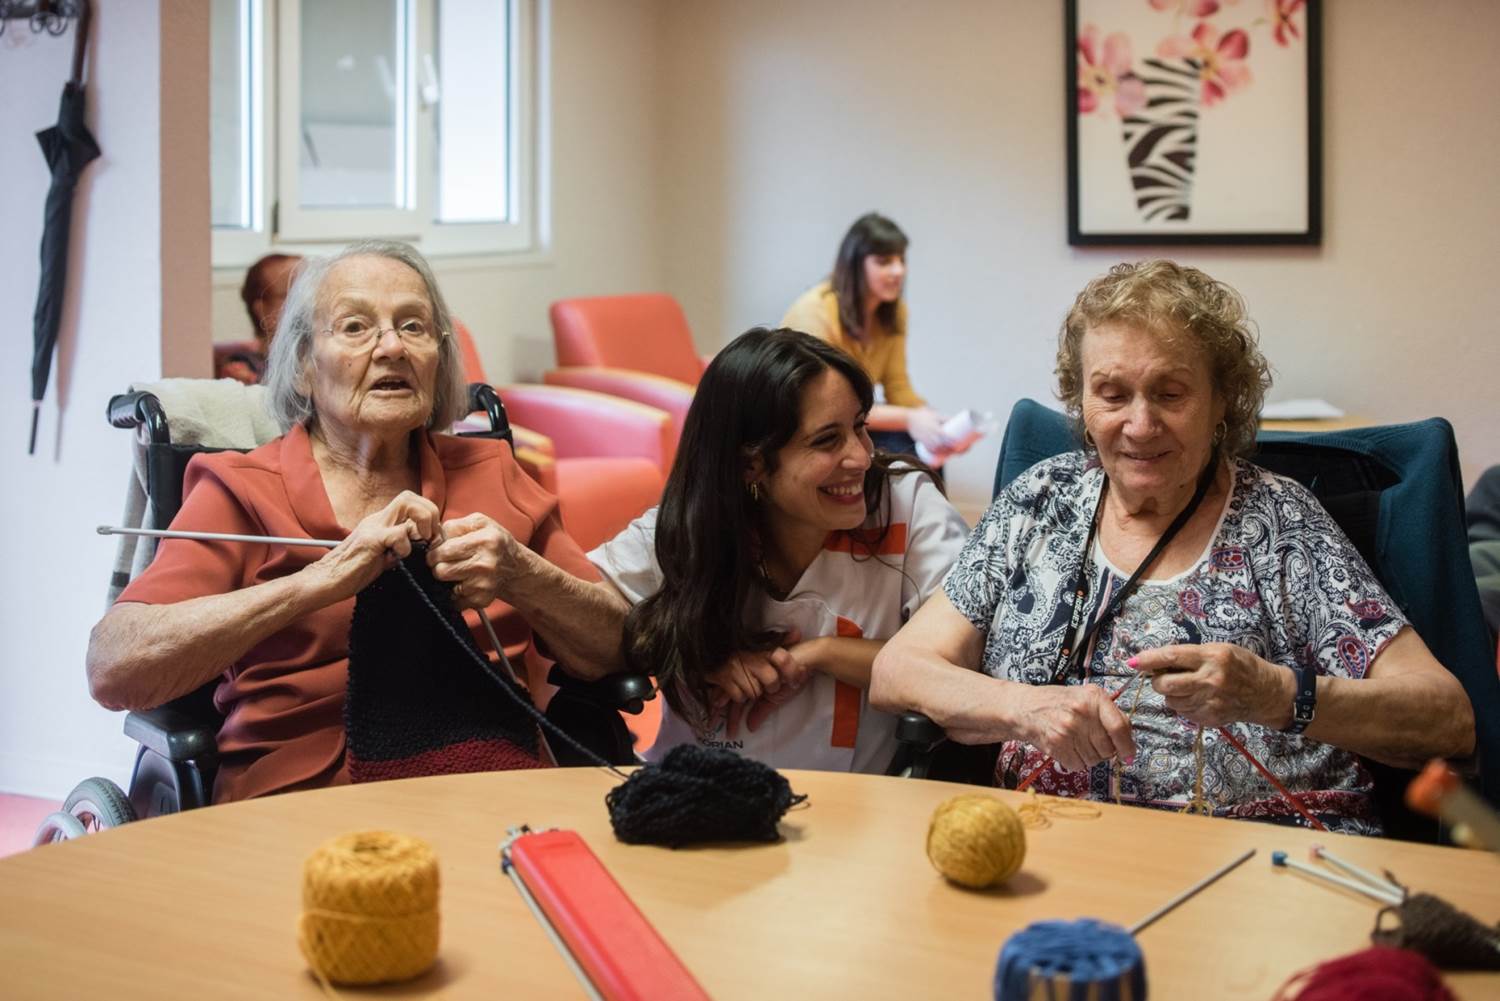 KORIAN Pressebild: Lächelnde Pflegerin mit glücklichen Senioren in einem Aufenthaltsraum in einem Pflegeheim